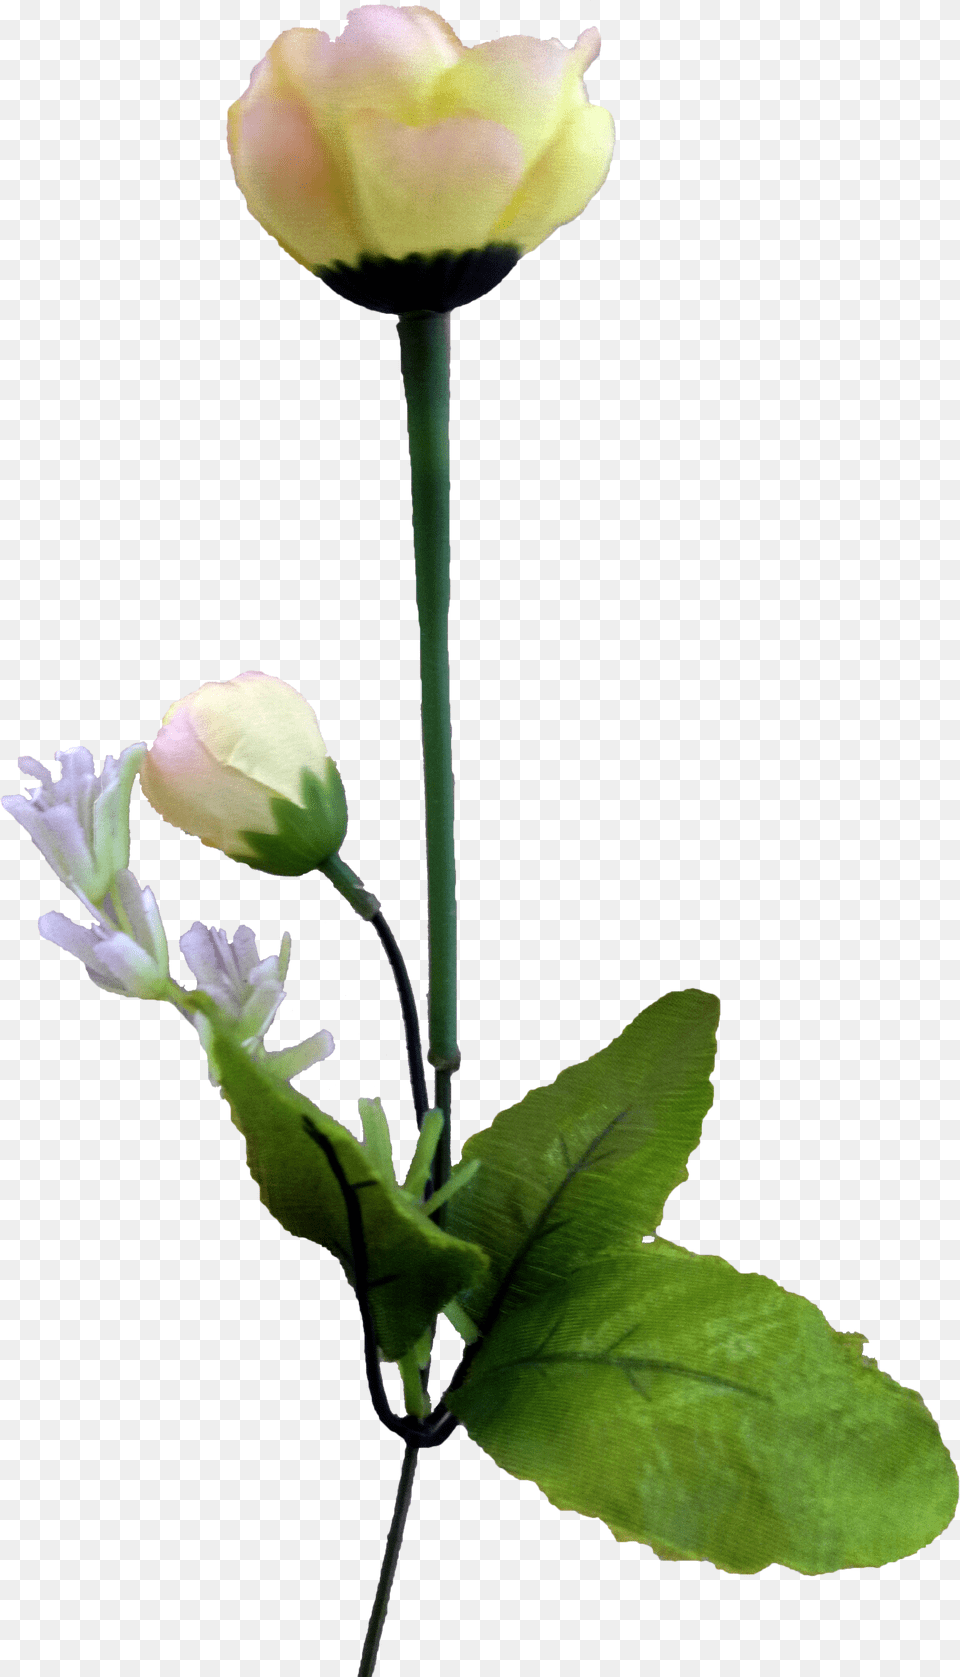 Tulip Flower Flower, Bud, Petal, Plant, Rose Png Image